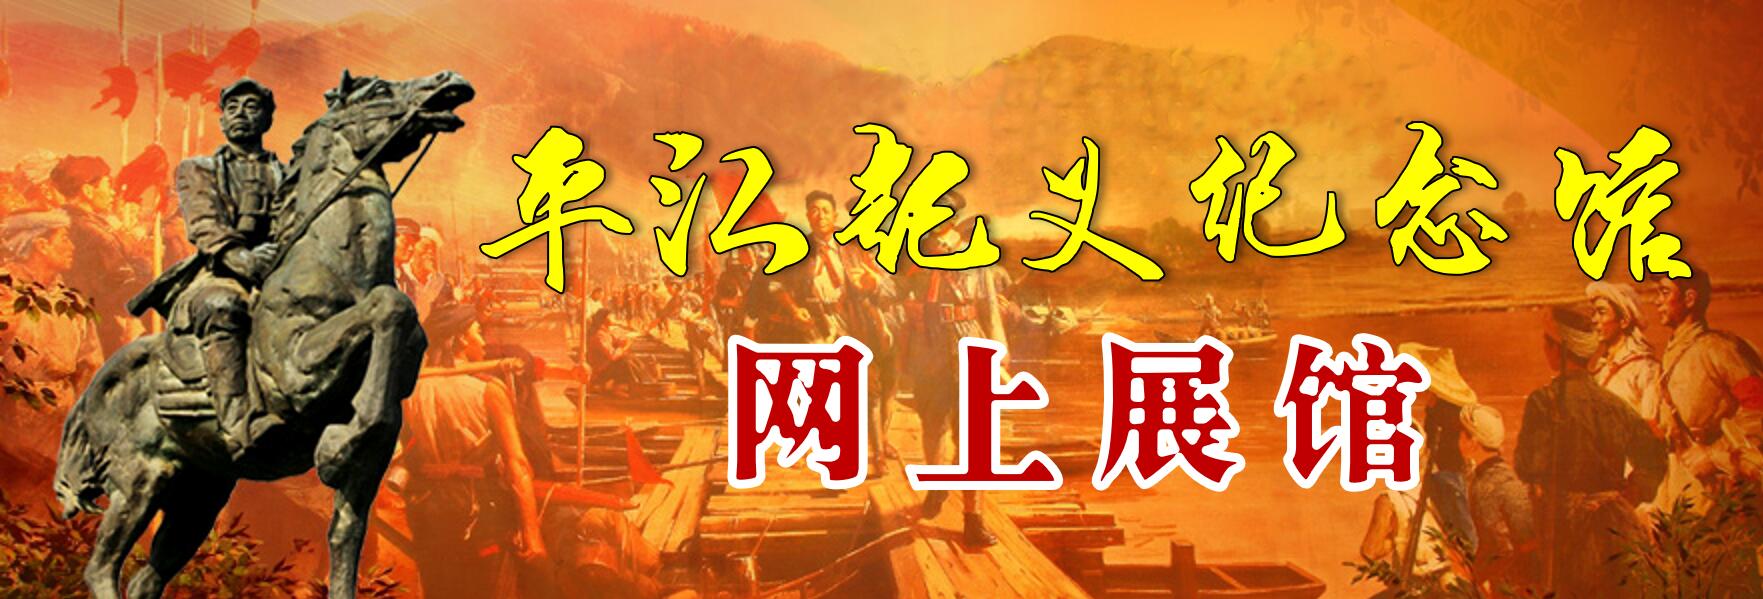 平江起义纪念馆网上展馆